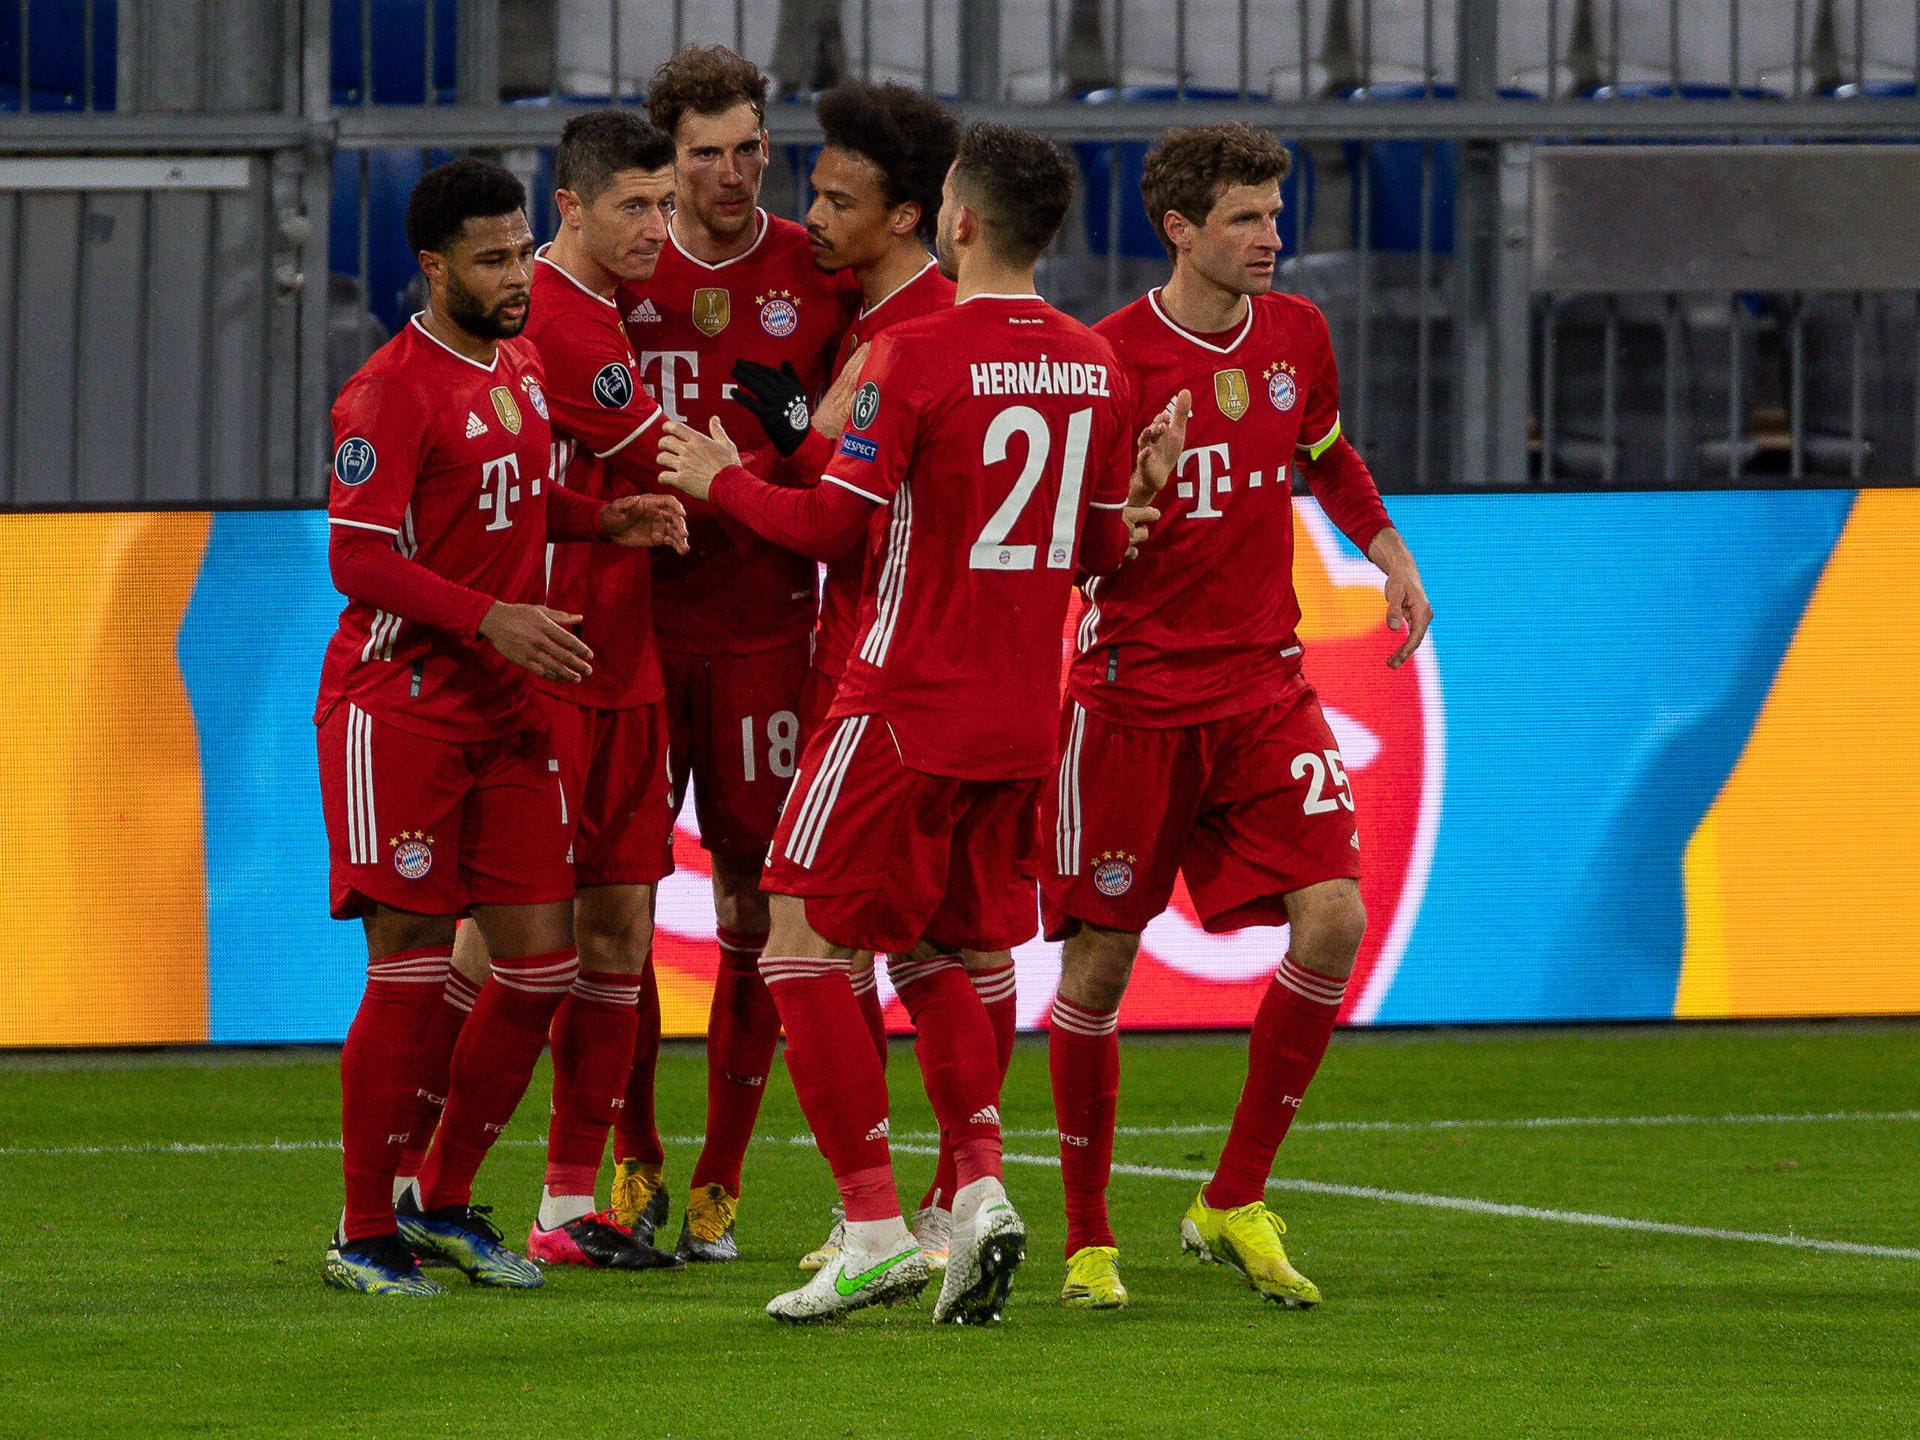 2:1 im Rückspiel gegen Lazio Rom: Der FC Bayern hat sich im Achtelfinale der Champions League durchgesetzt. Dabei konnten aber nicht alle Stars des Rekordmeisters überzeugen. t-online hat die Profis der Münchner einzeln bewertet.